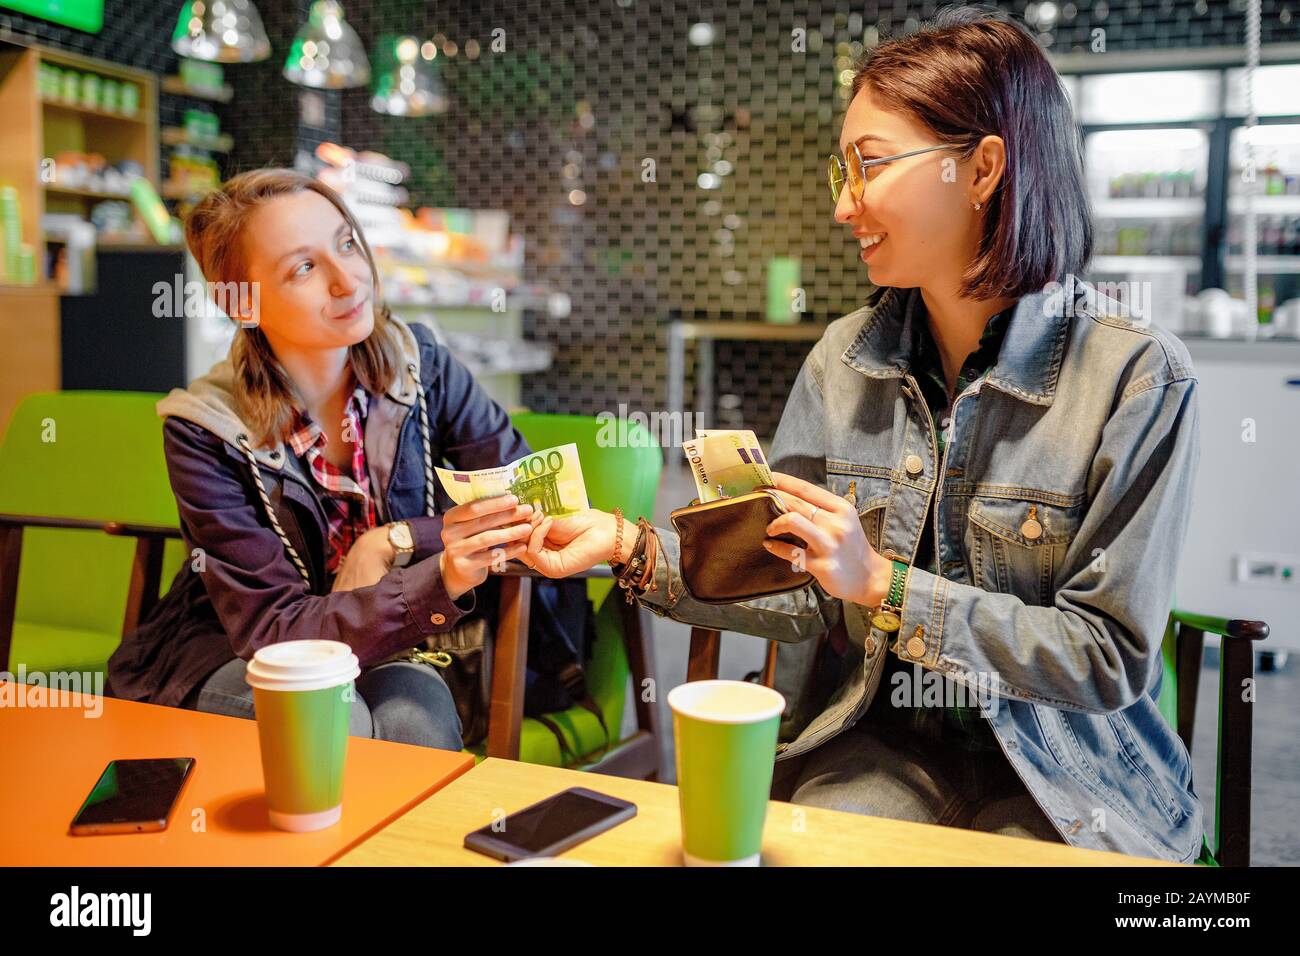 Une femme donne à une personne étrangère ou à son ami euro billet argent à l'intérieur d'un café. Le concept de prêt d'argent ou de fraude Banque D'Images